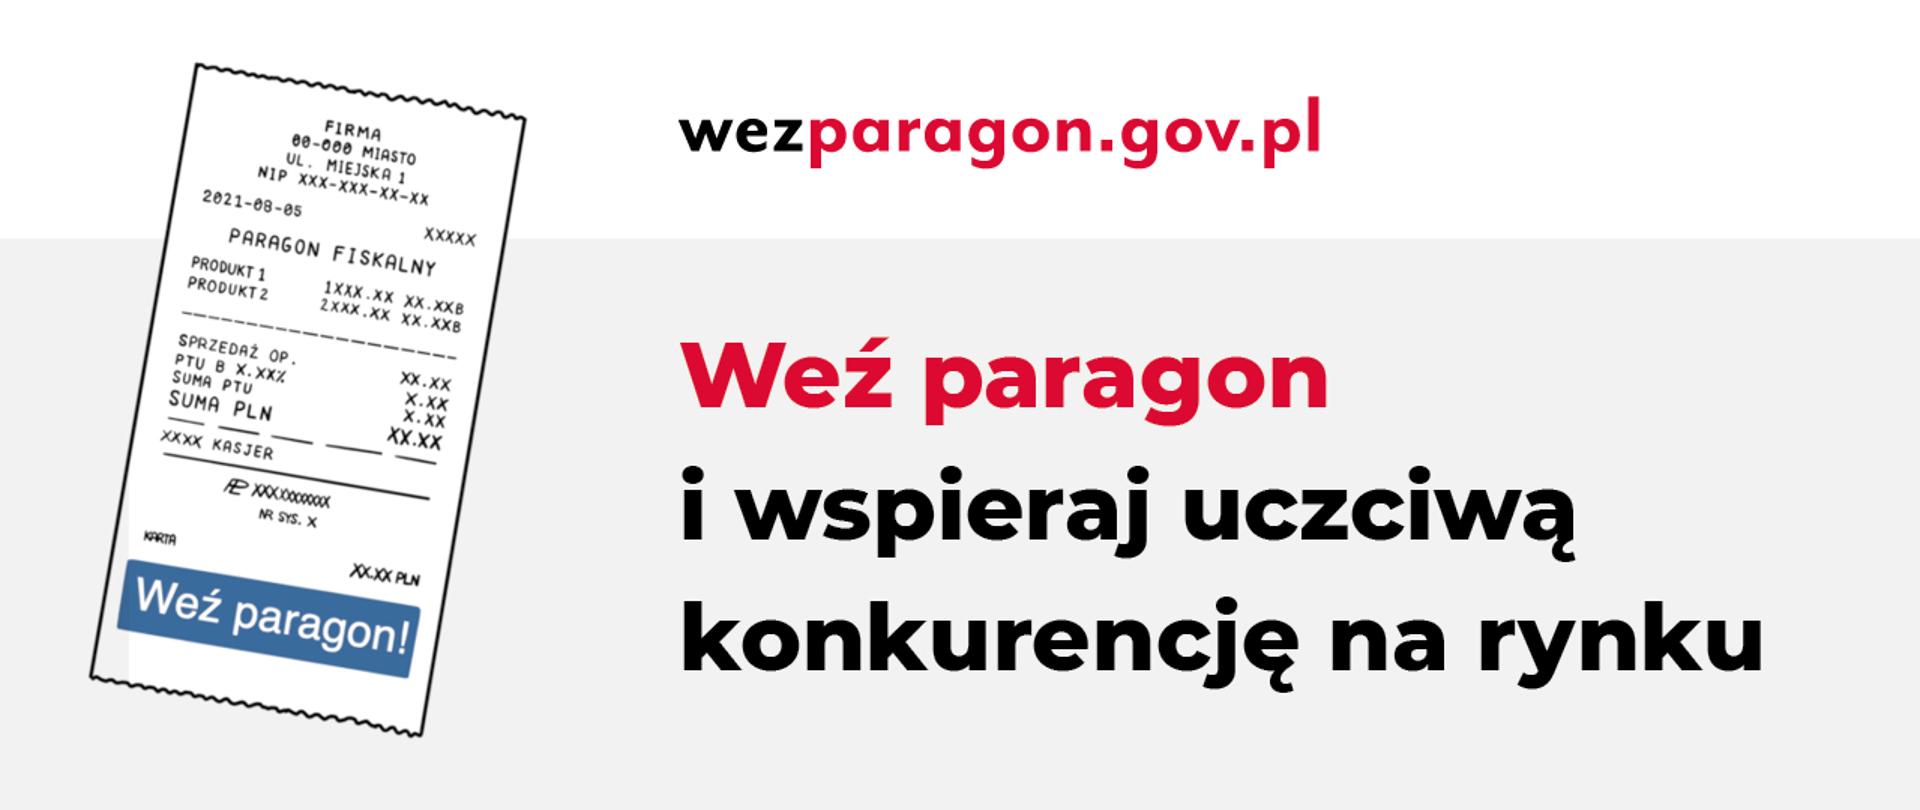 Grafika z paragonem, adresem strony wezparagon.gov.pl, napisem Weź paragon i wspieraj uczciwą konkurencję na rynku.